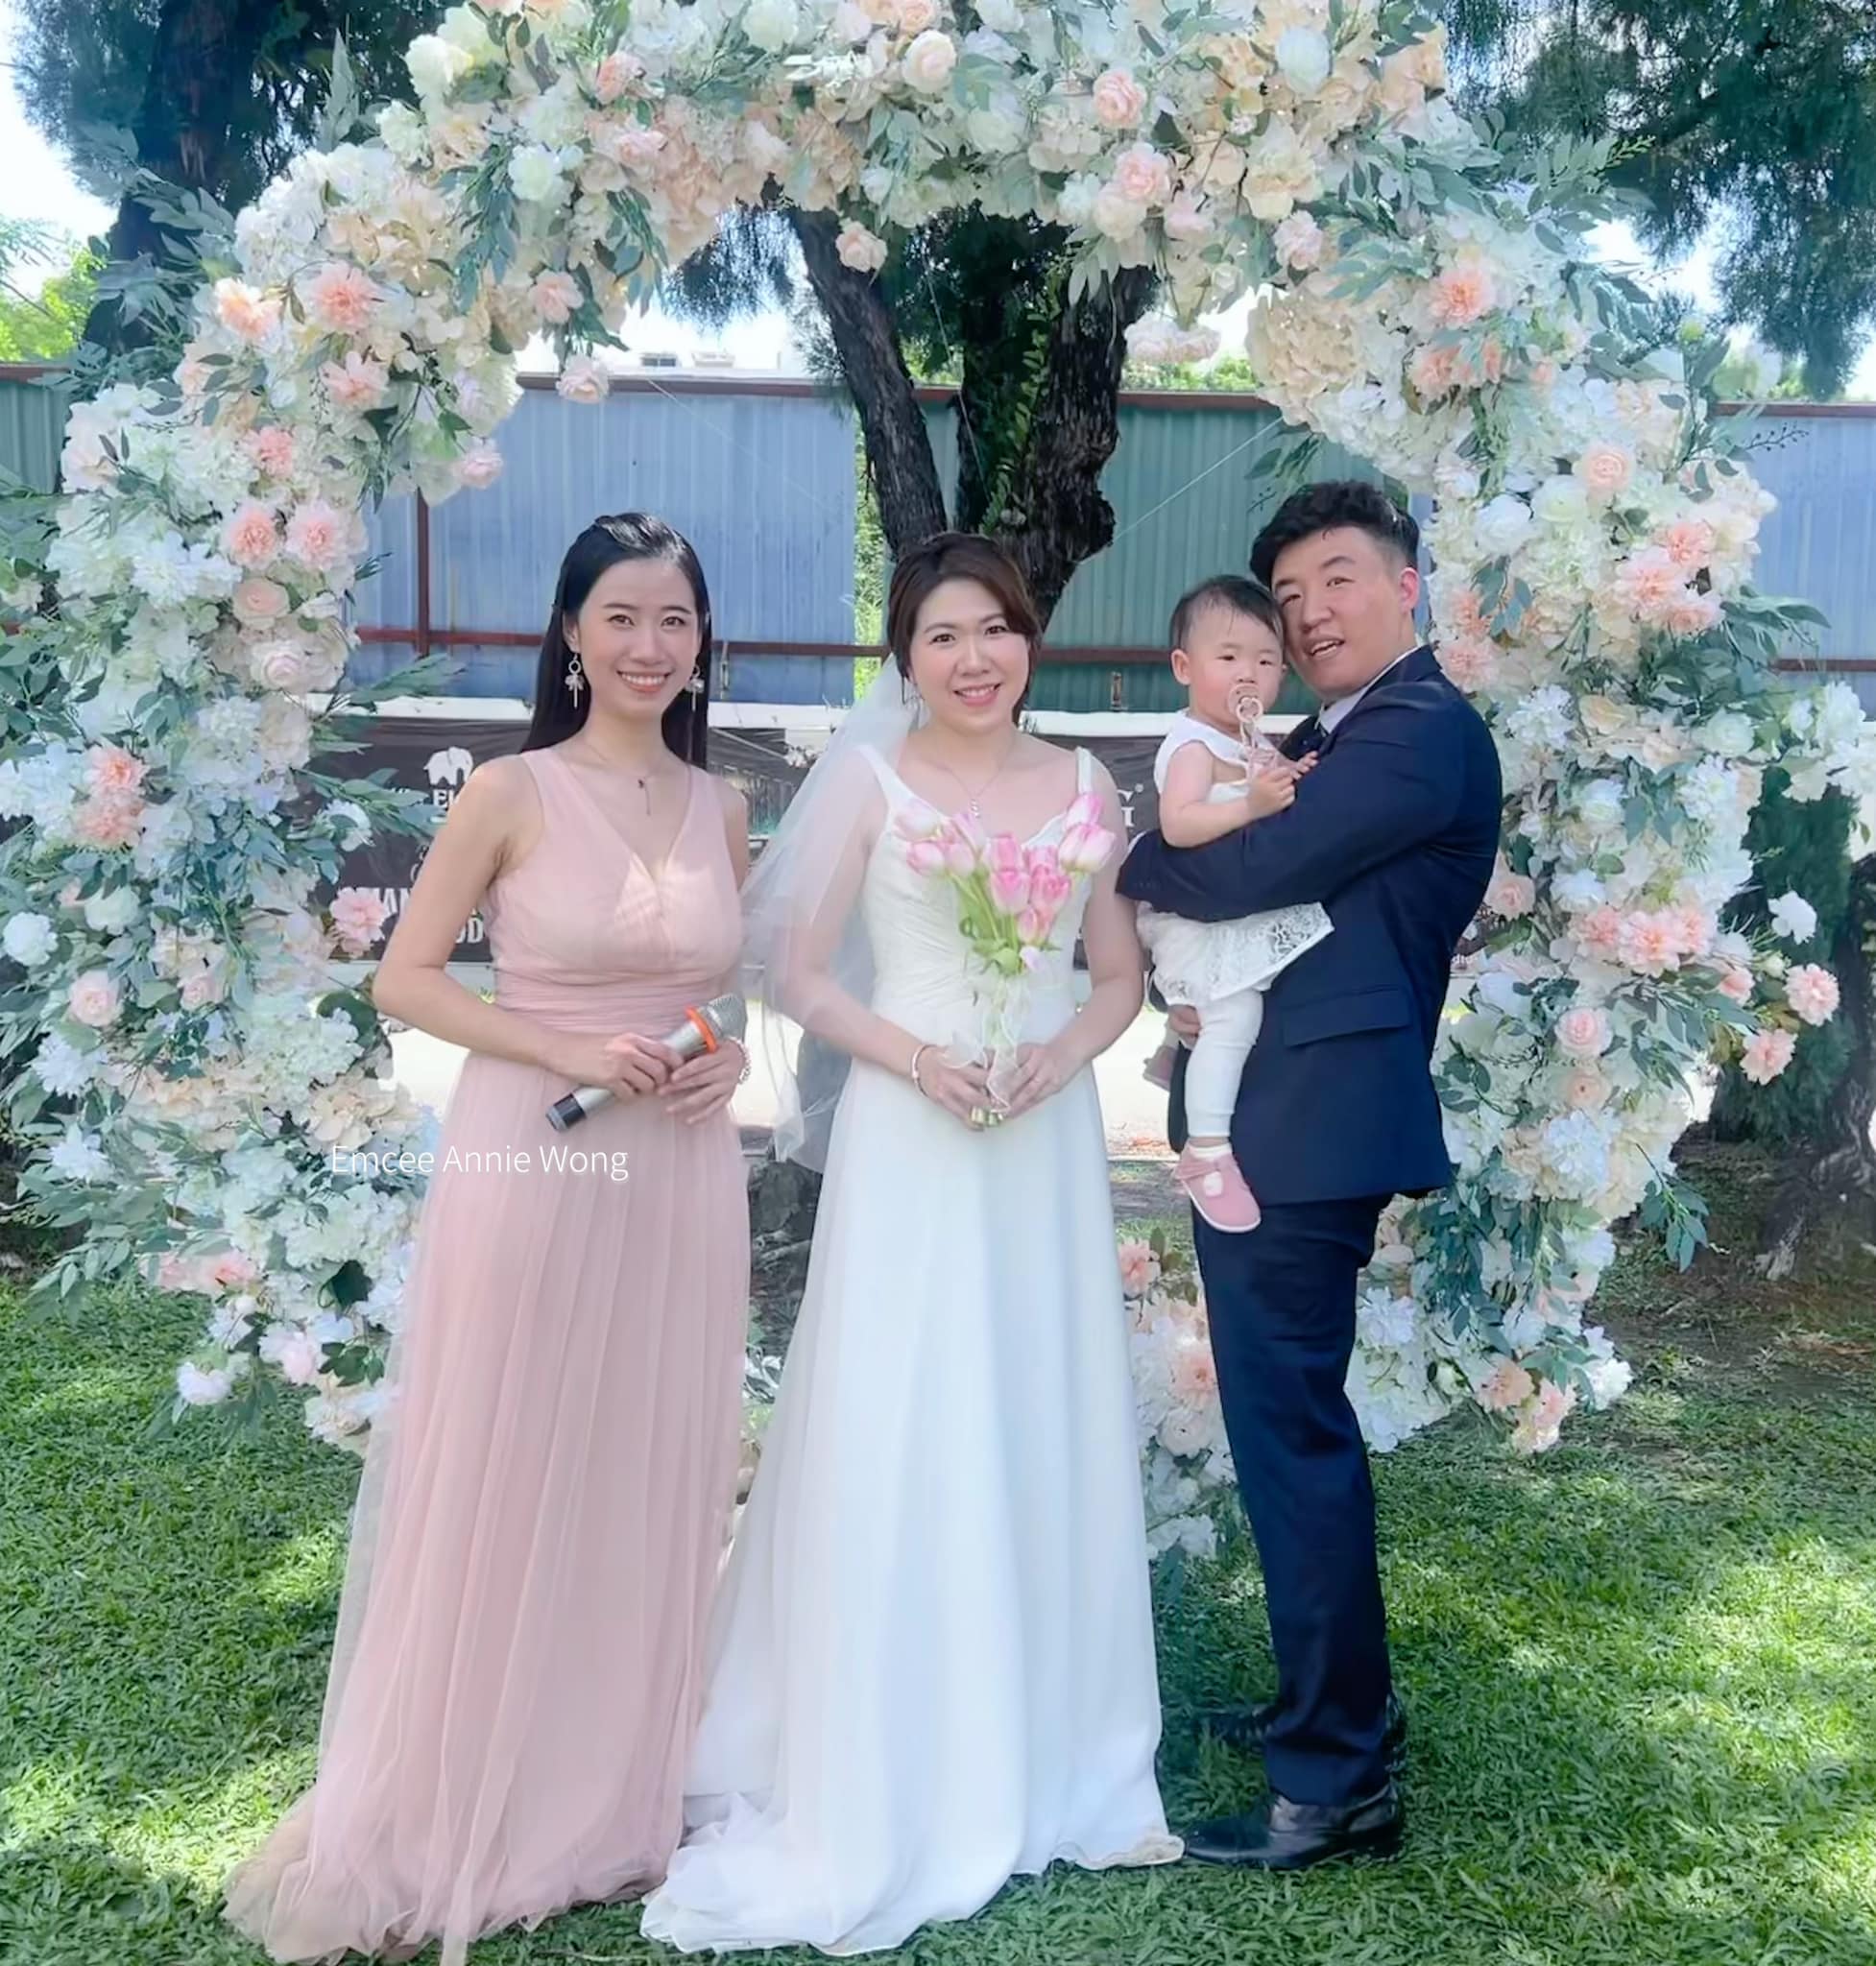 主持人Annie Wong工作紀錄: 跨越國度的婚禮（韓國與馬來西亞）